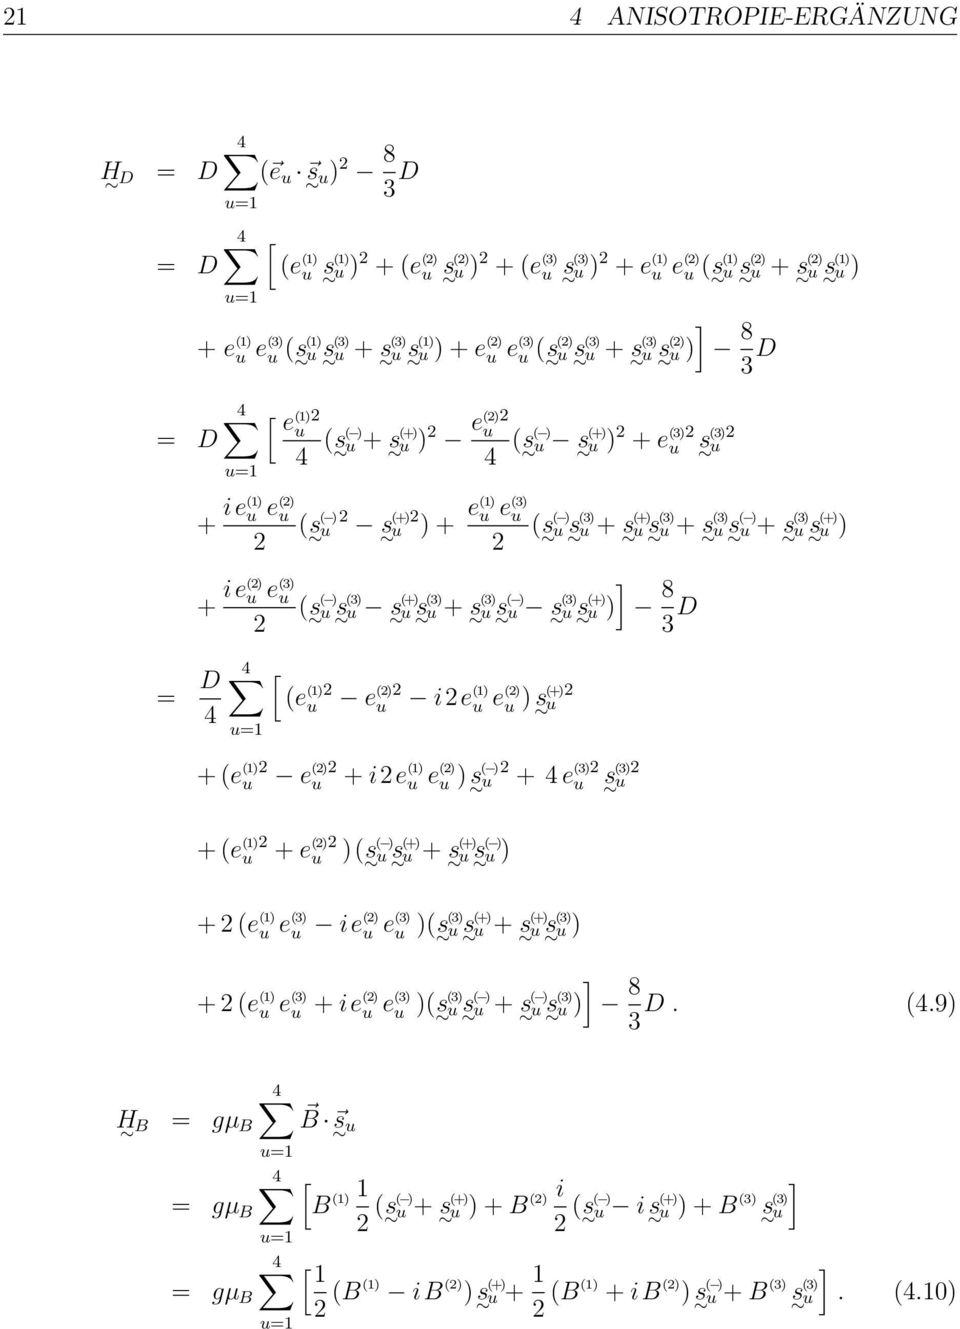 ( ) u 2 s (+) u e u u 2 ) + e(1) 2 u su 2 8 3 D (s ( ) u s u + s (+) u s u + s u s ( ) u + s u s (+) u ) ] ( ) (+) ( ) (+) (s u su su su + su su su su ) 8 3 D [ (e (1)2 u e (2)2 u i2e (1) u e (2) u )